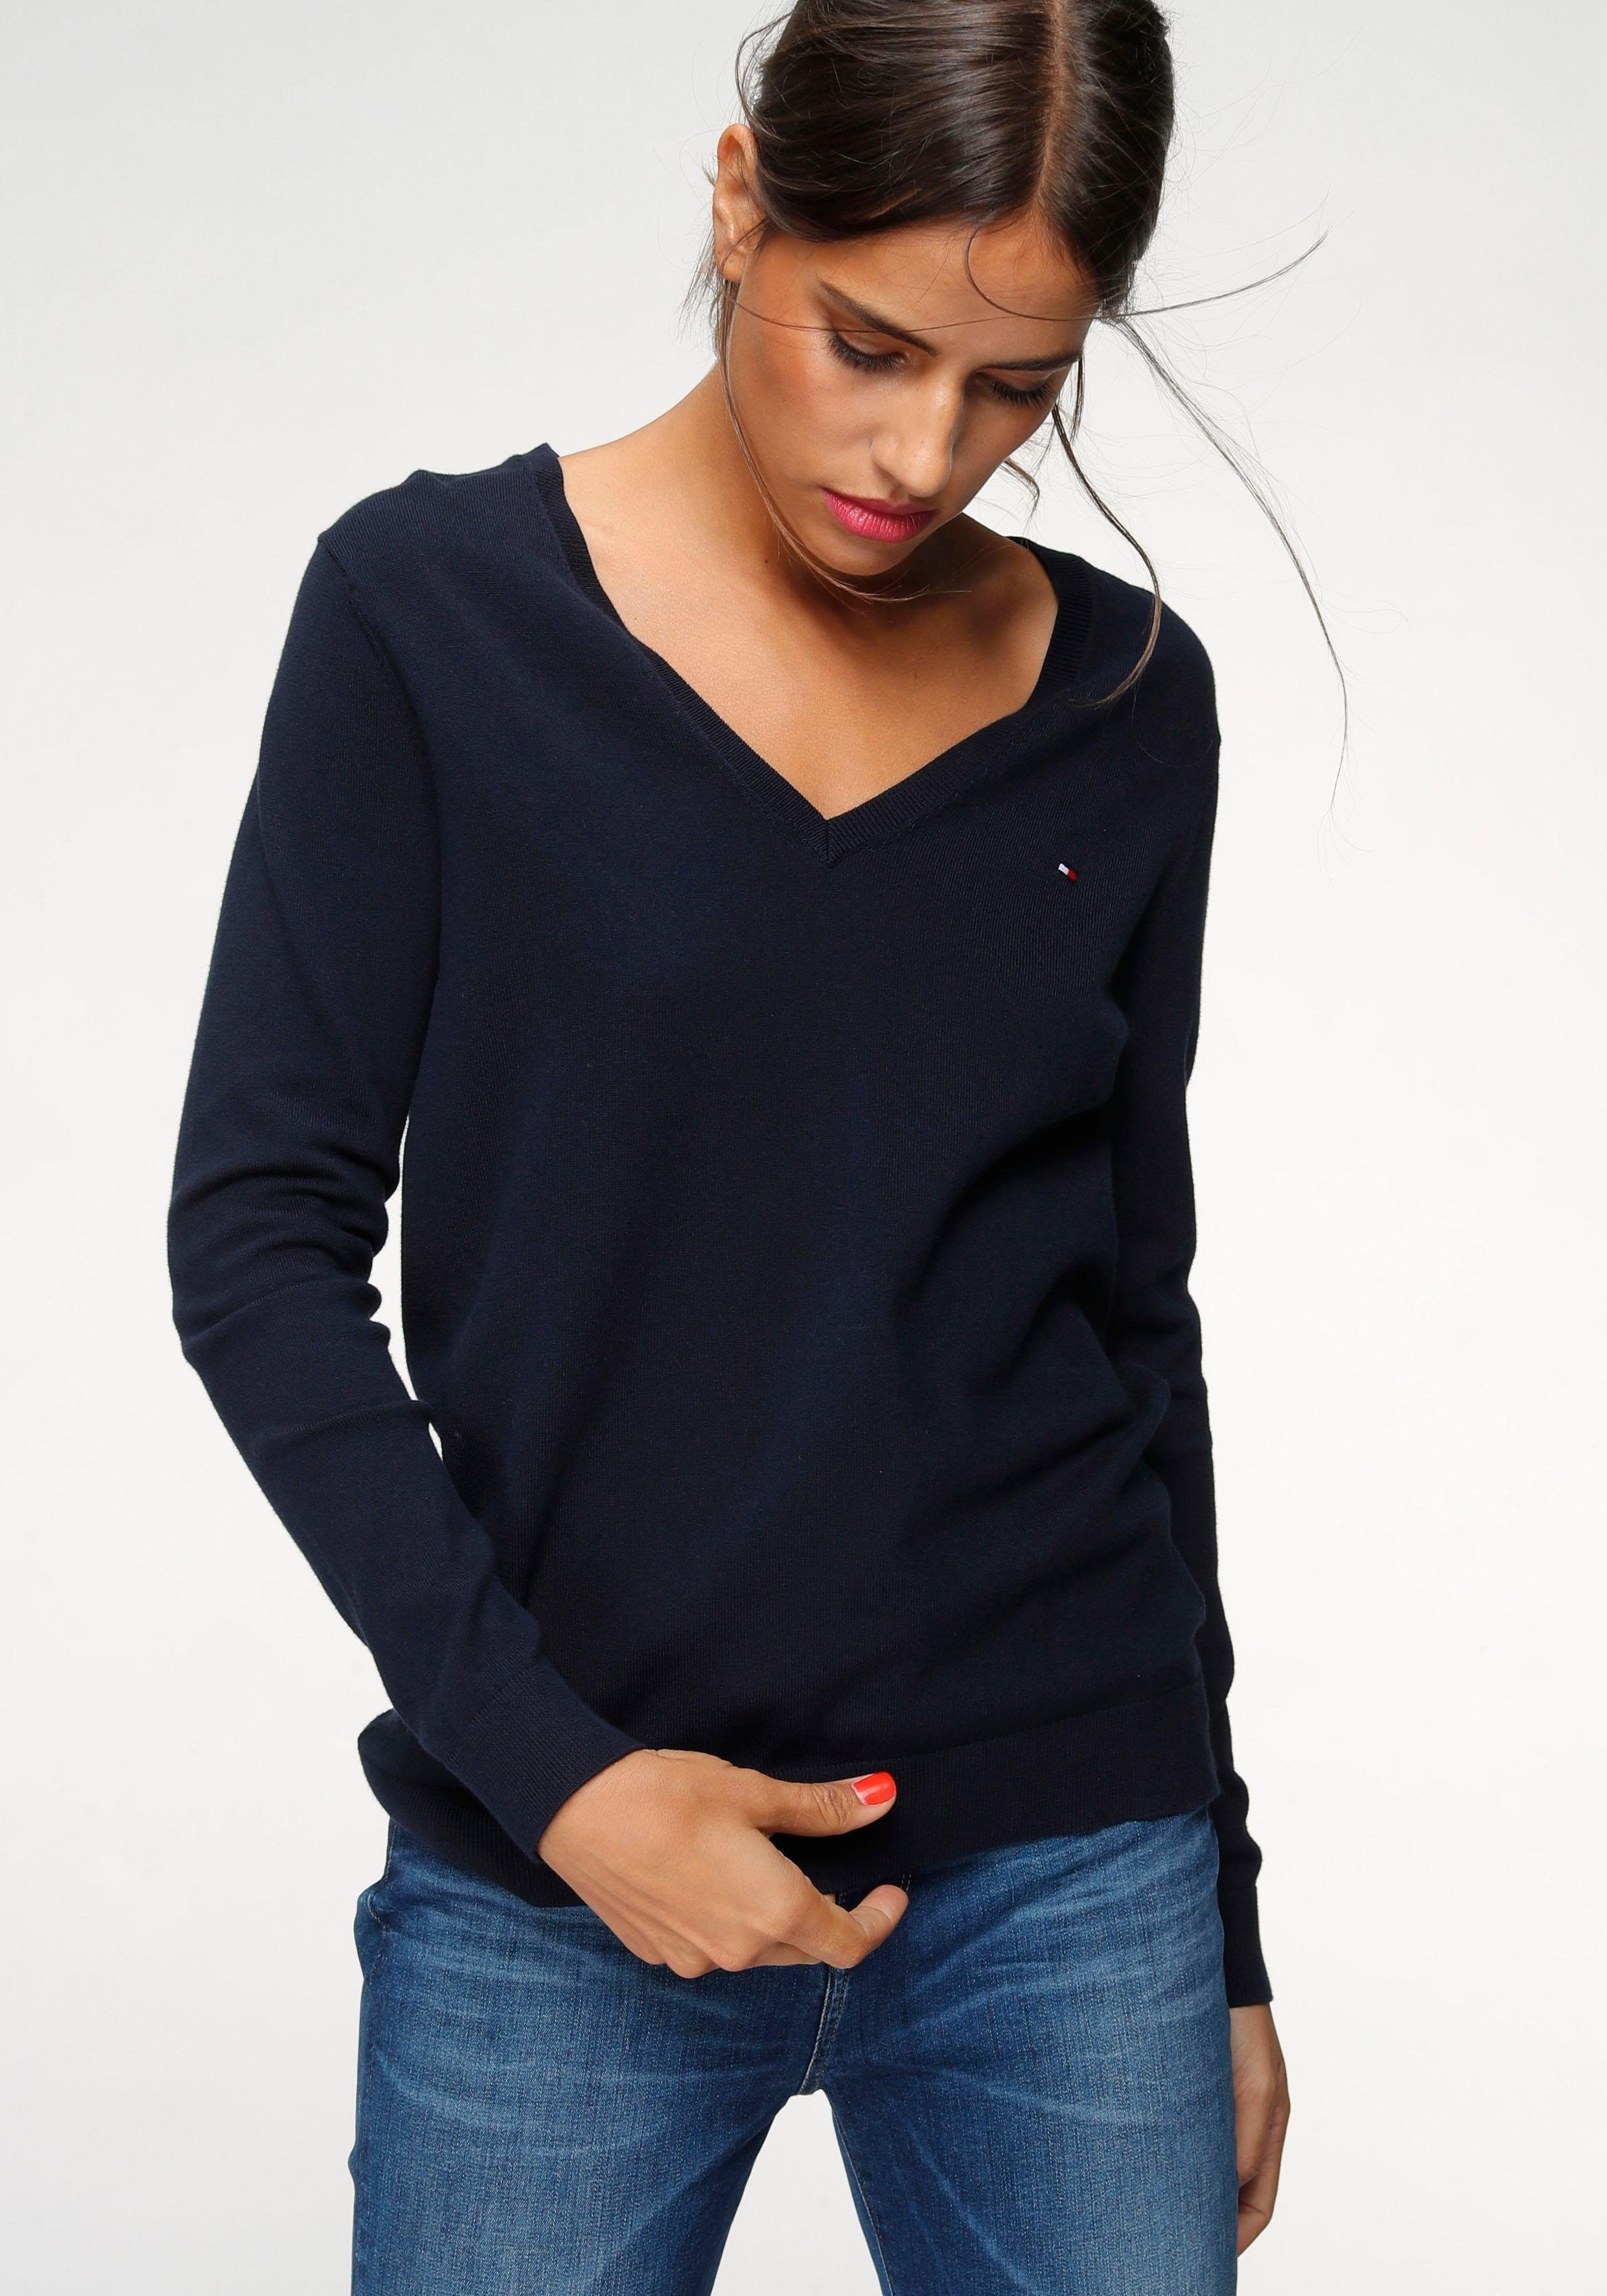 Tommy Hilfiger Pullover für Damen kaufen | OTTO